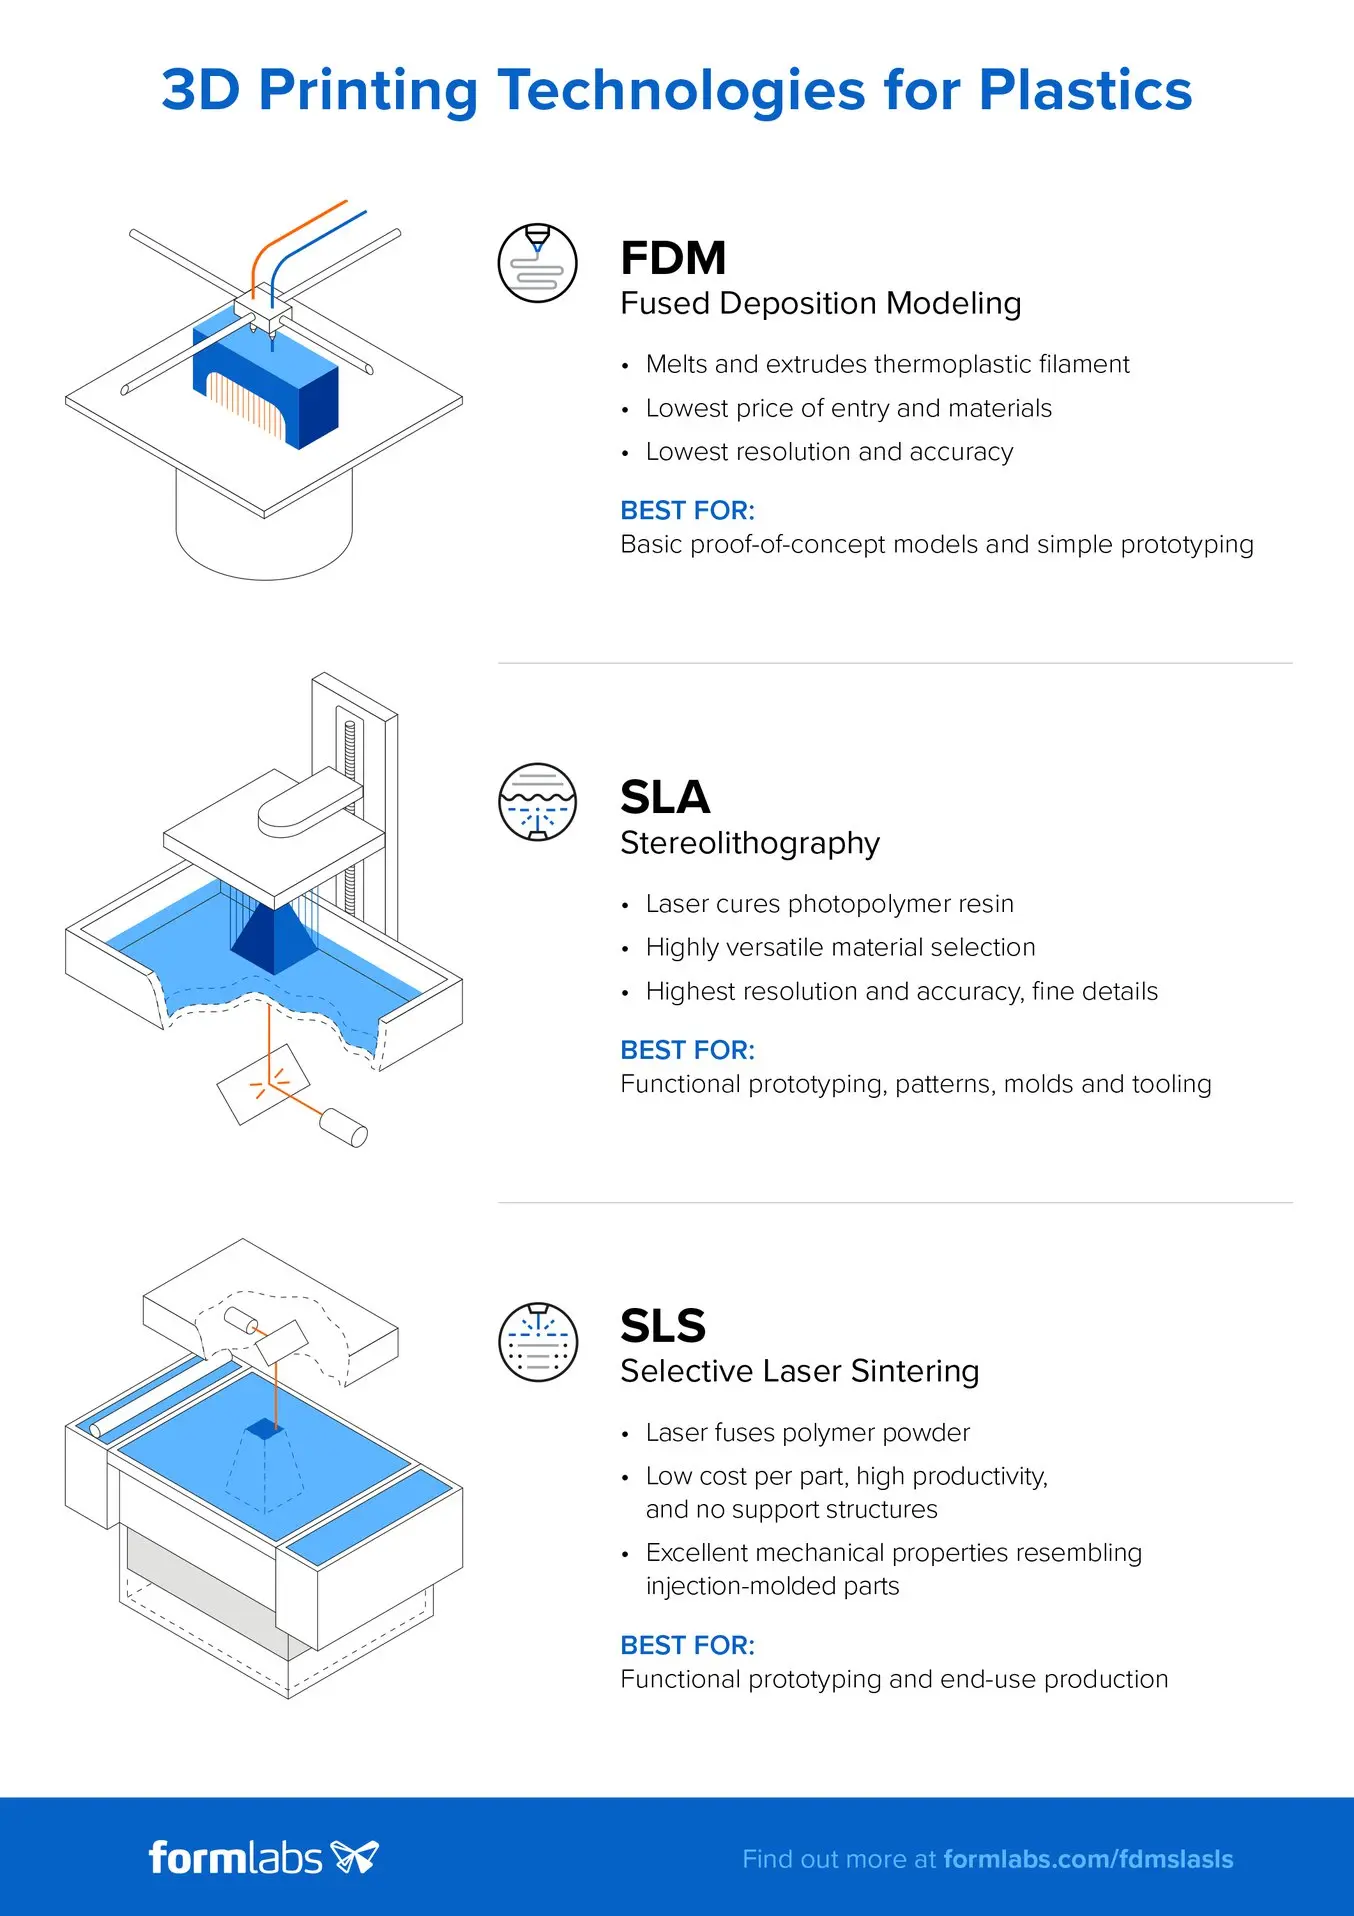 Confronto tra FDM e SLA e SLS - Tecnologie di stampa 3D per la plastica - Infografica